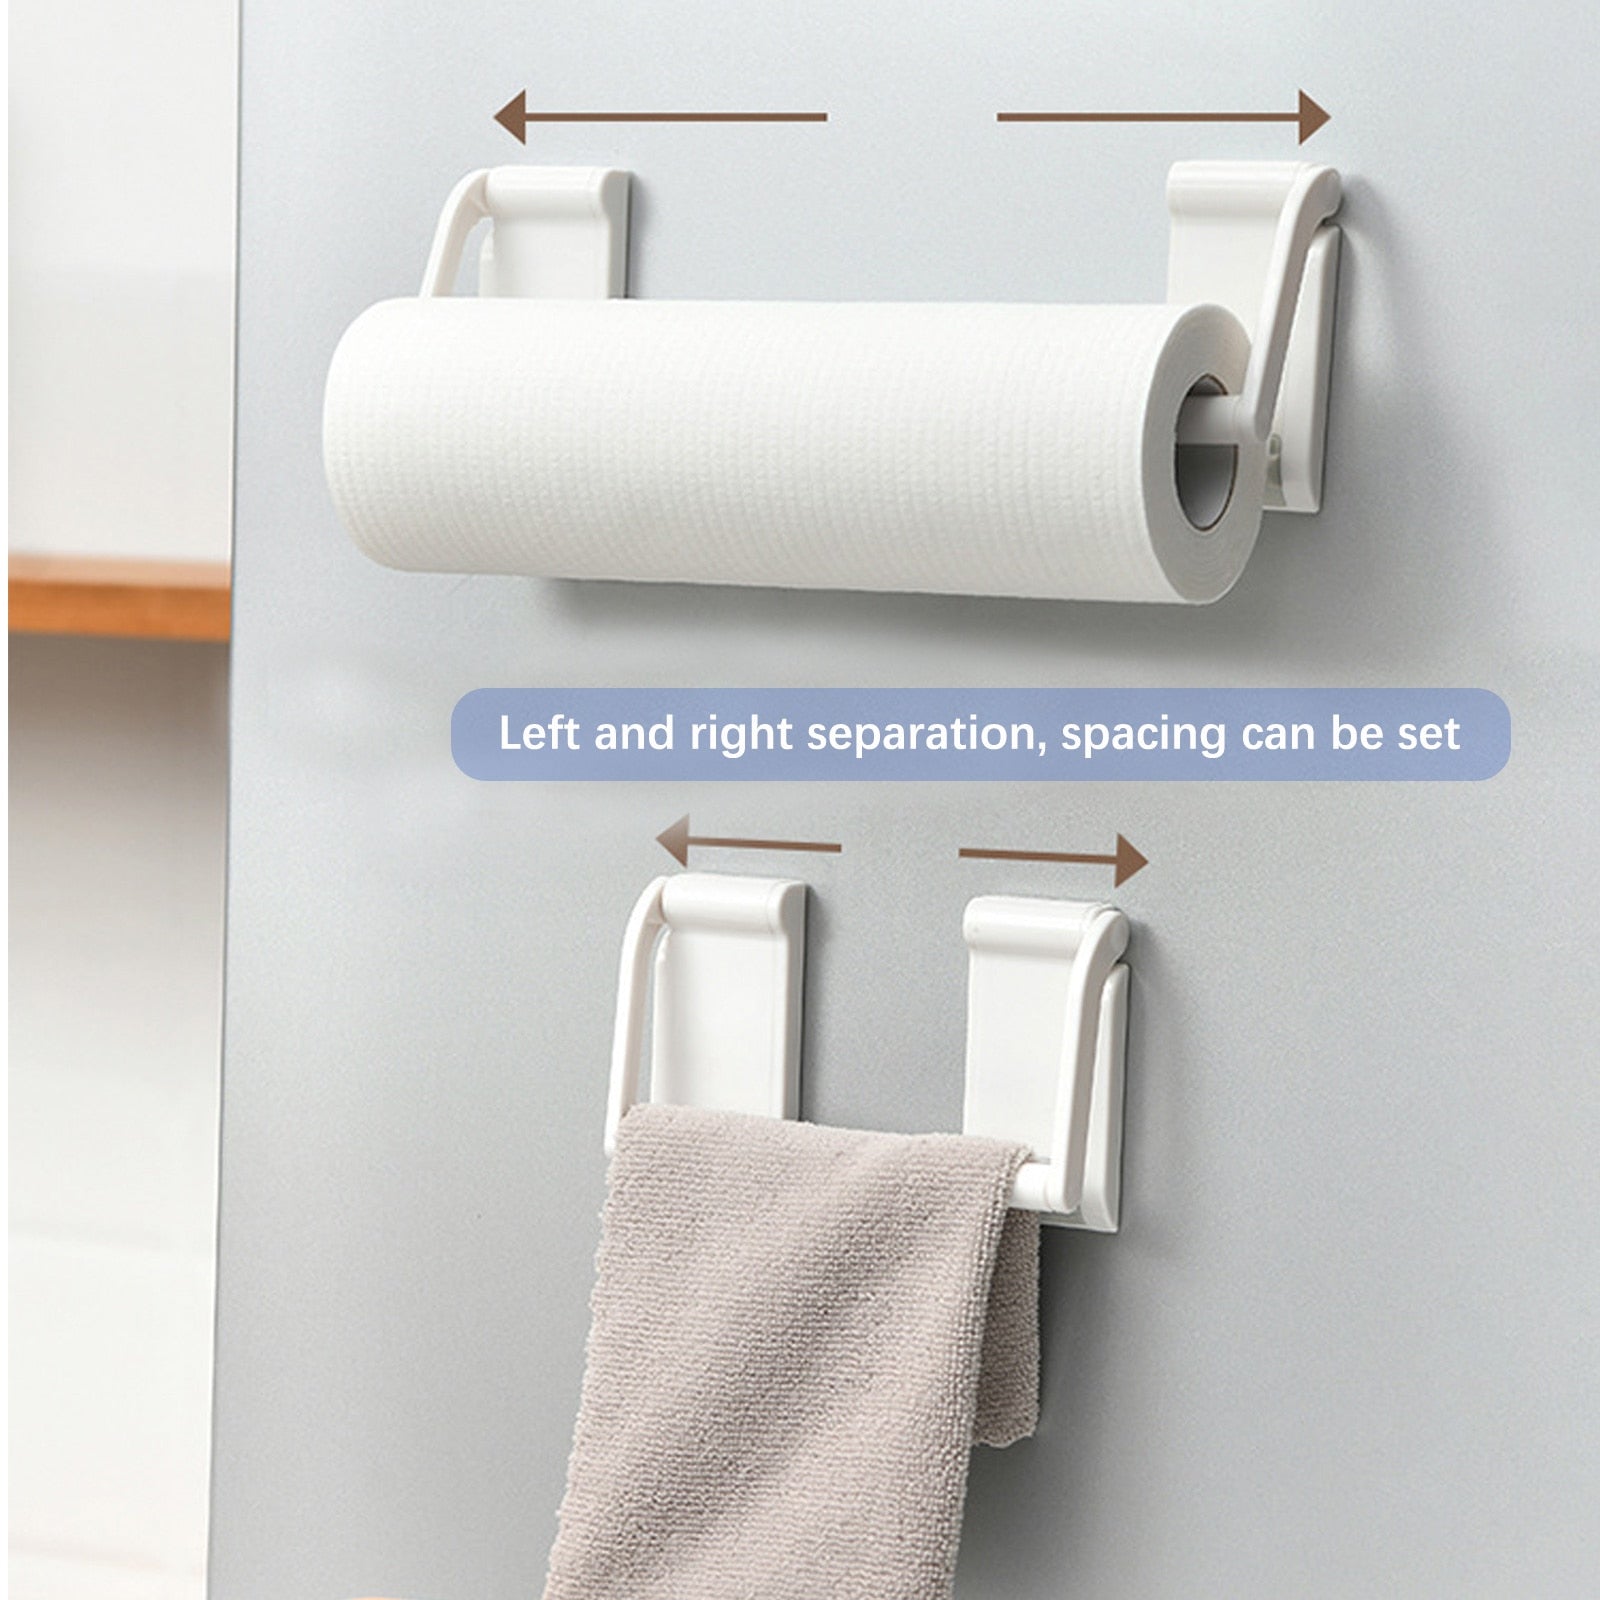 Adjustable Magnetic Paper Towel Cloth Holder